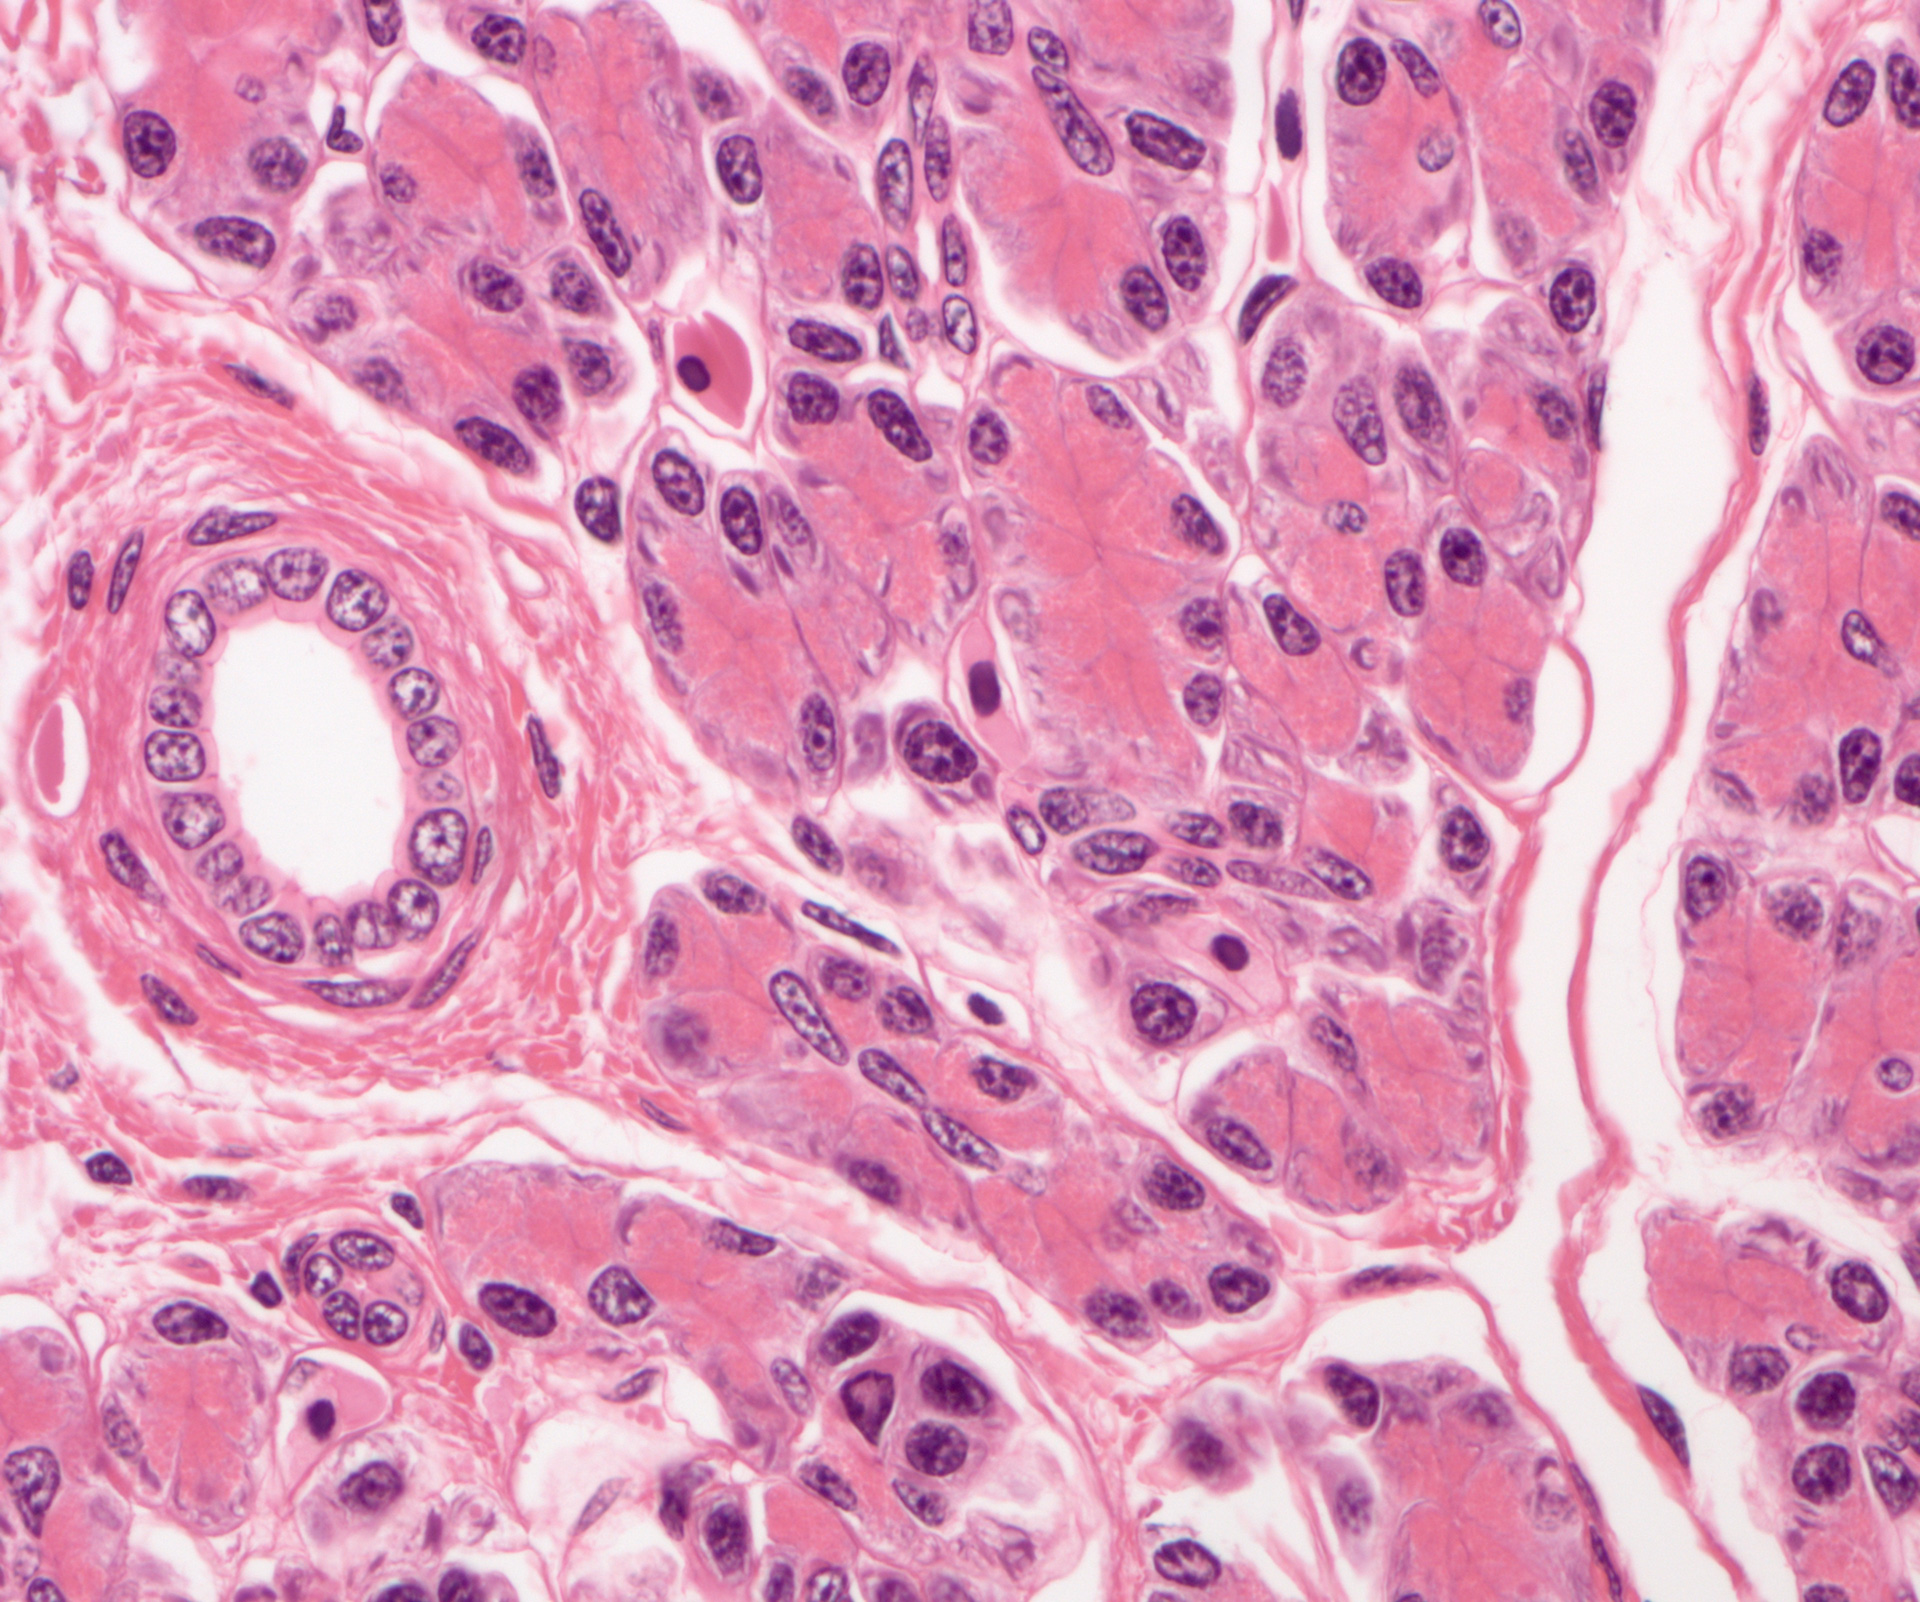 Hígado de Amphiuma en campo claro. Tinción HE, imagen captada con ZEISS Axio Imager, objetivo: EC Plan-NEOFLUAR 20×/0,50 